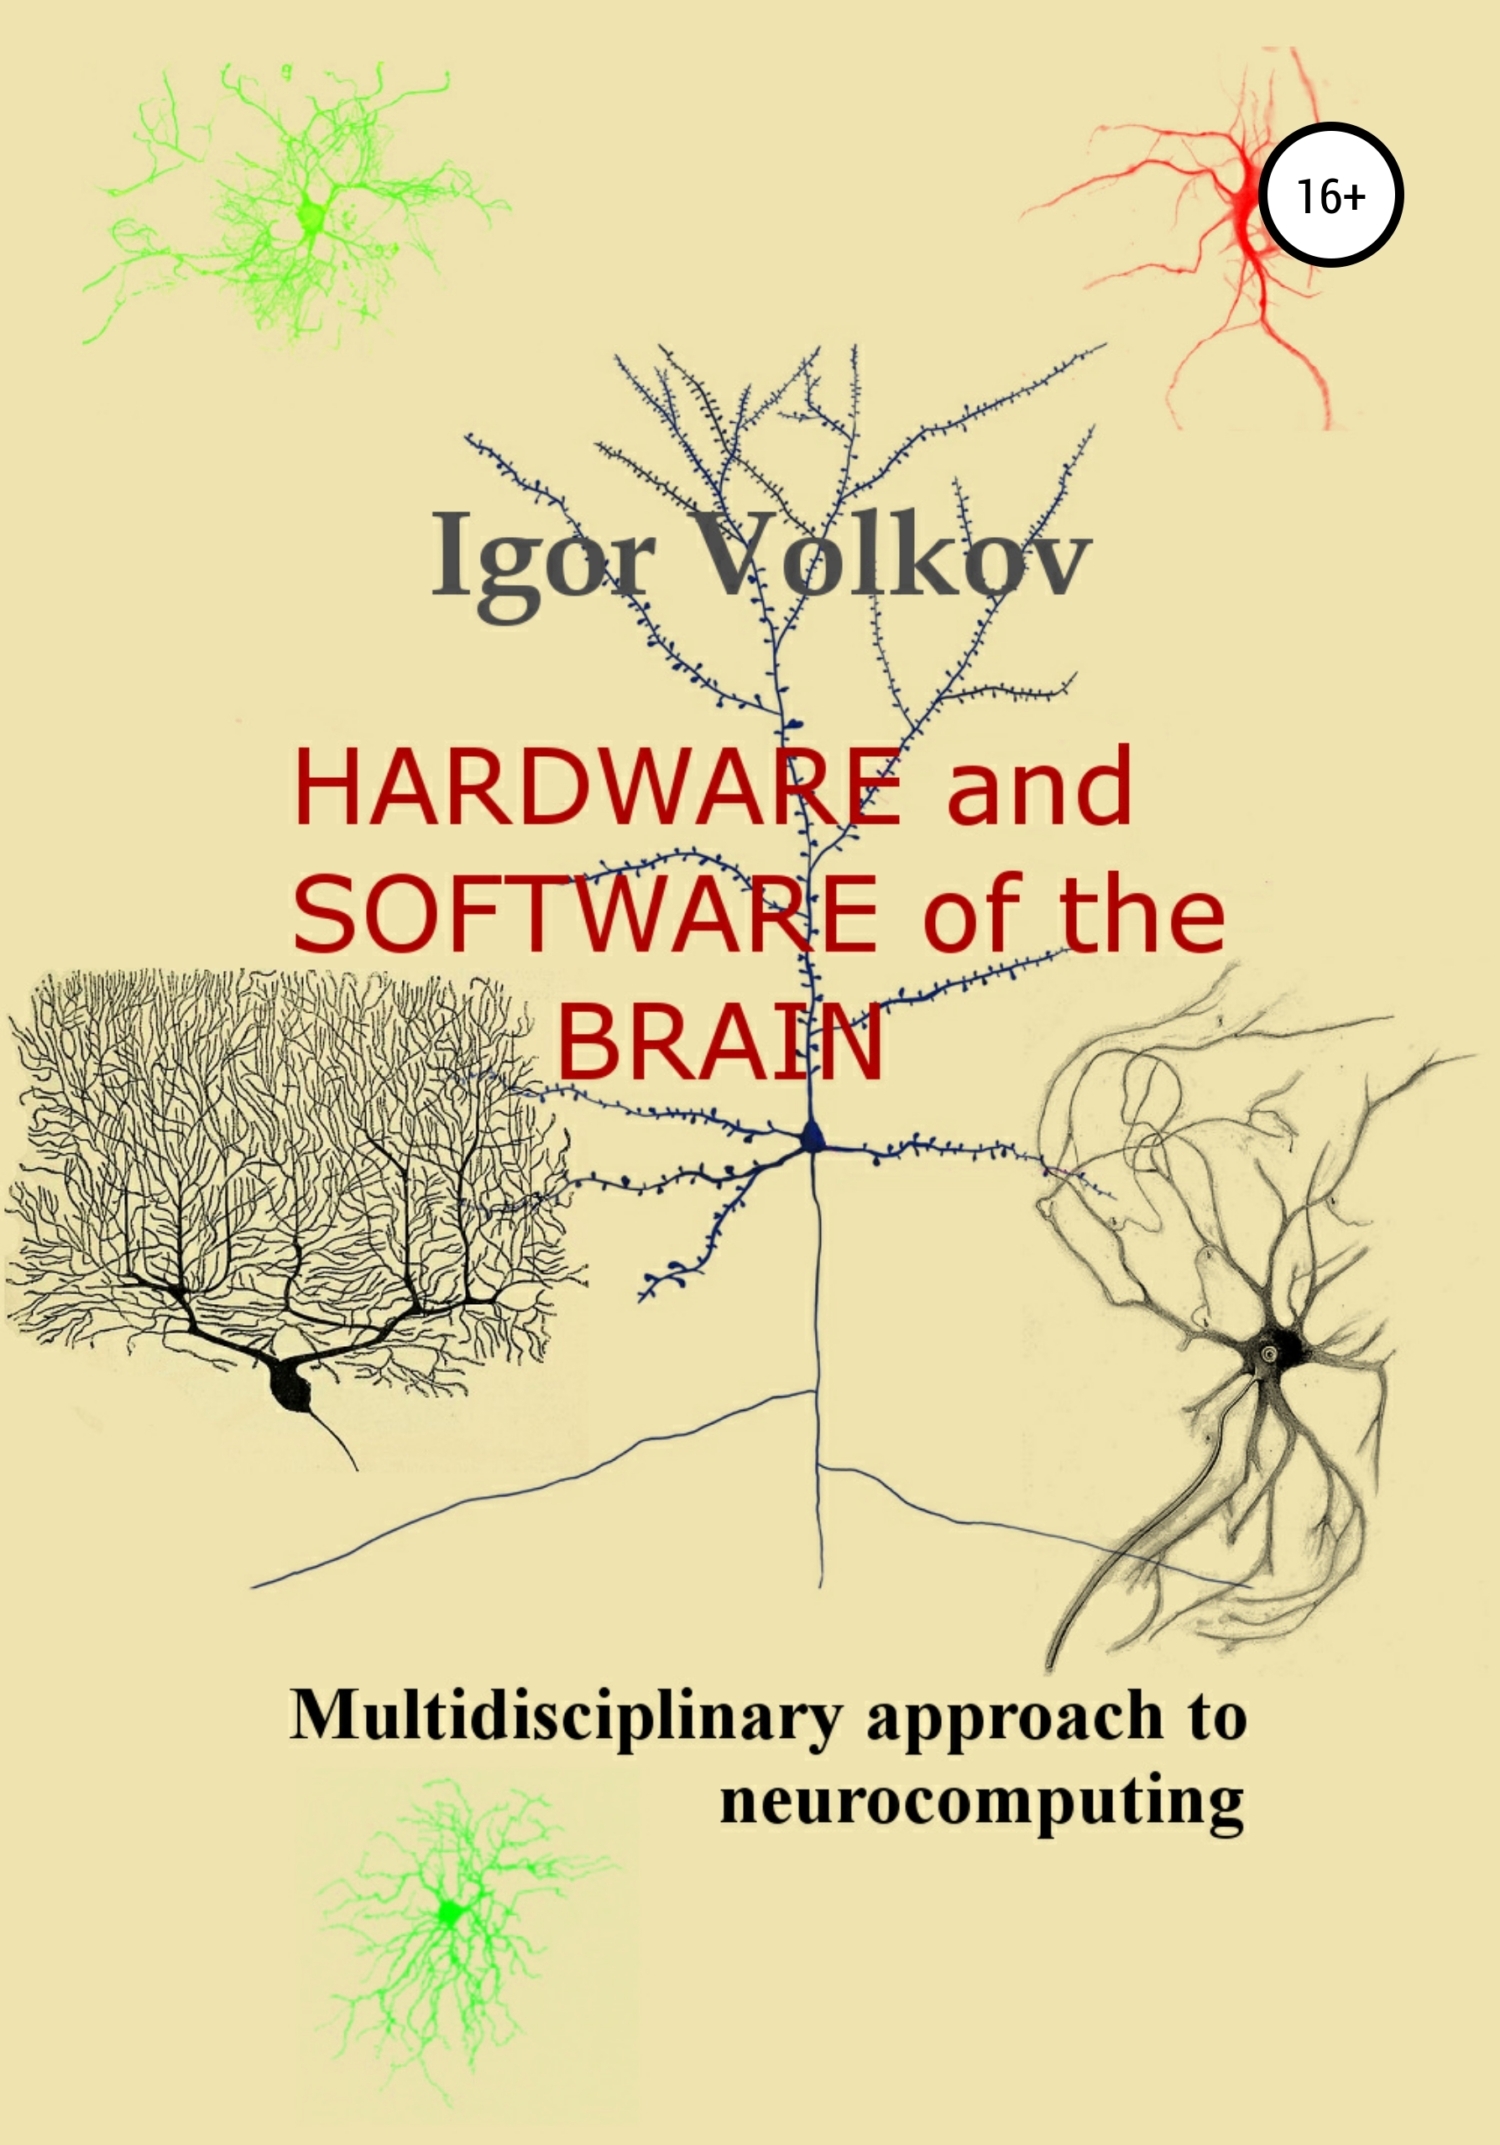 Книга Hardware and software of the brain из серии , созданная Igor Volkov, может относится к жанру Биология, Программирование. Стоимость электронной книги Hardware and software of the brain с идентификатором 41507234 составляет 0 руб.